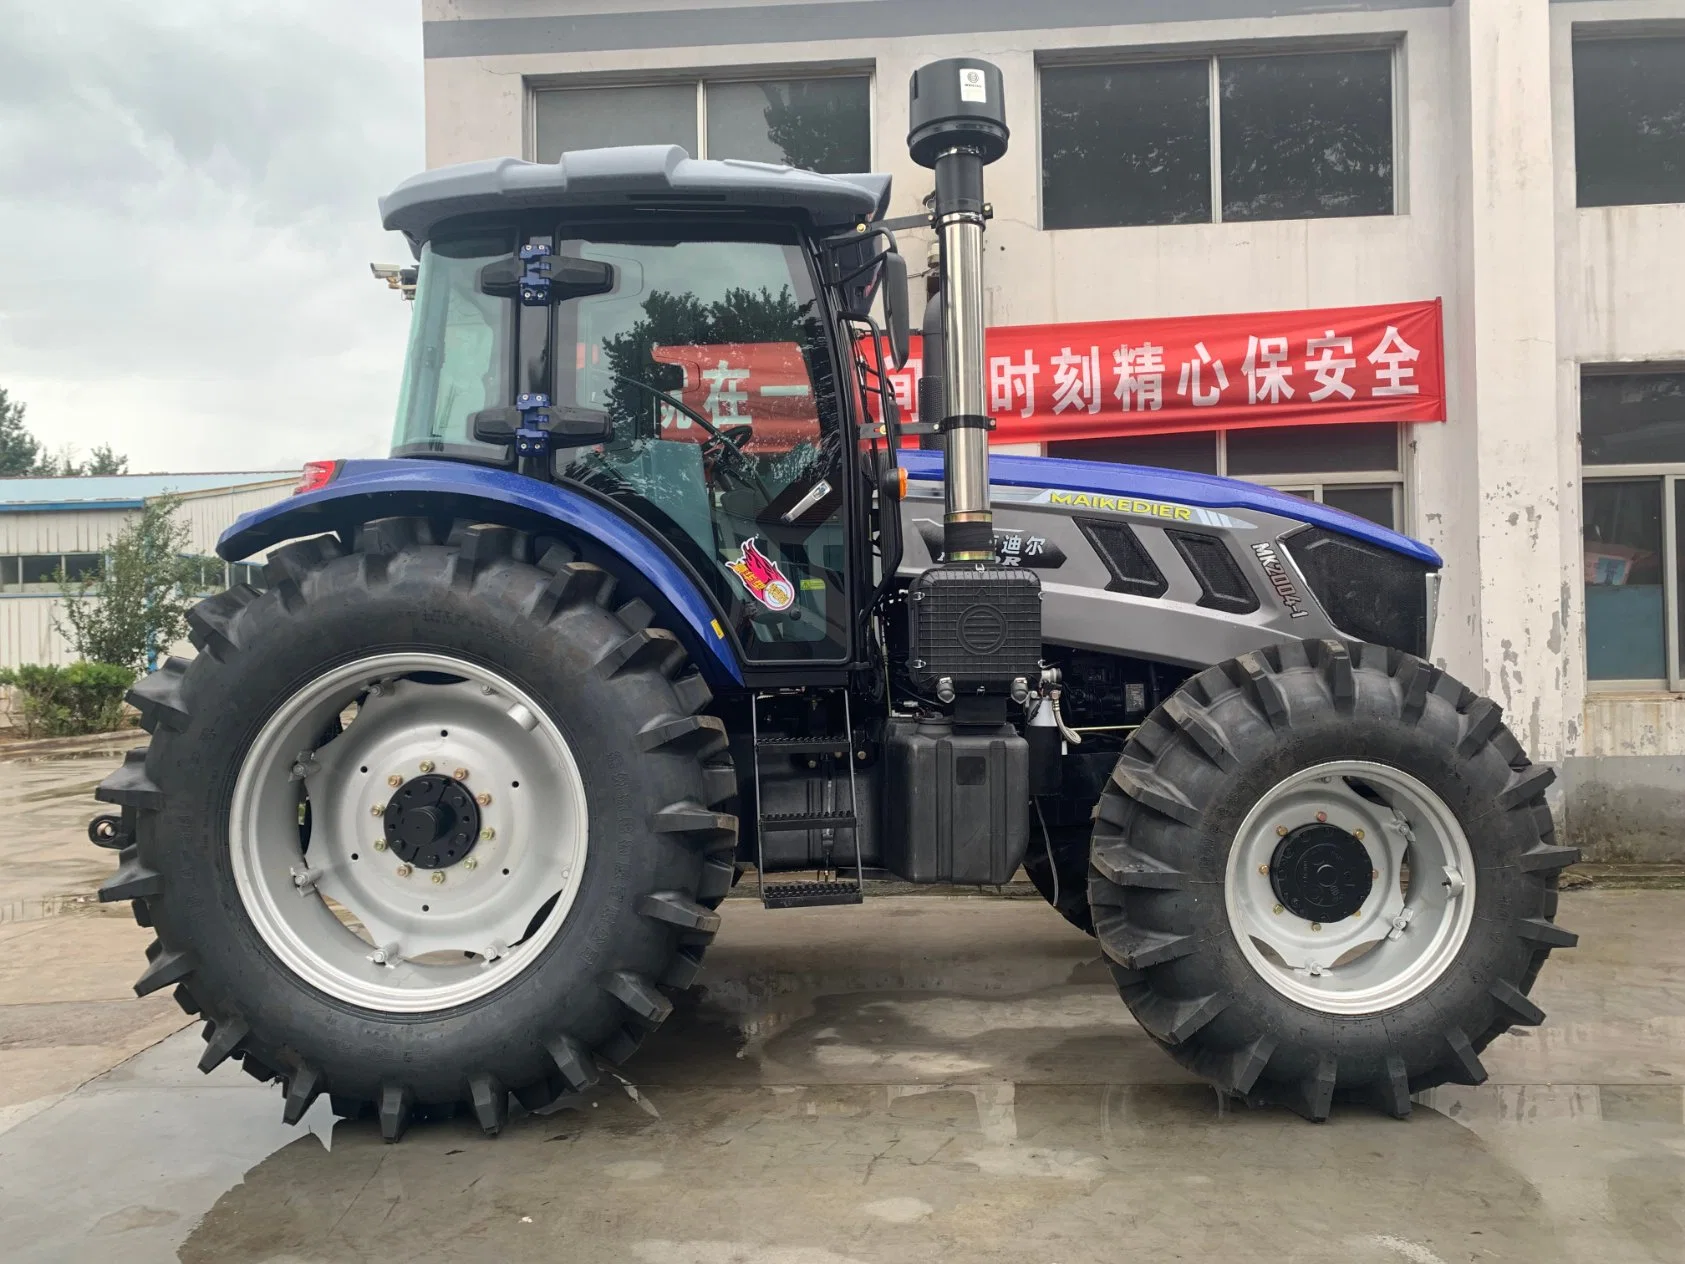 Grand Tracteur agricole/petit tracteur agricole de machines agricoles pour la ferme/serre/agriculture/transports avec une haute qualité